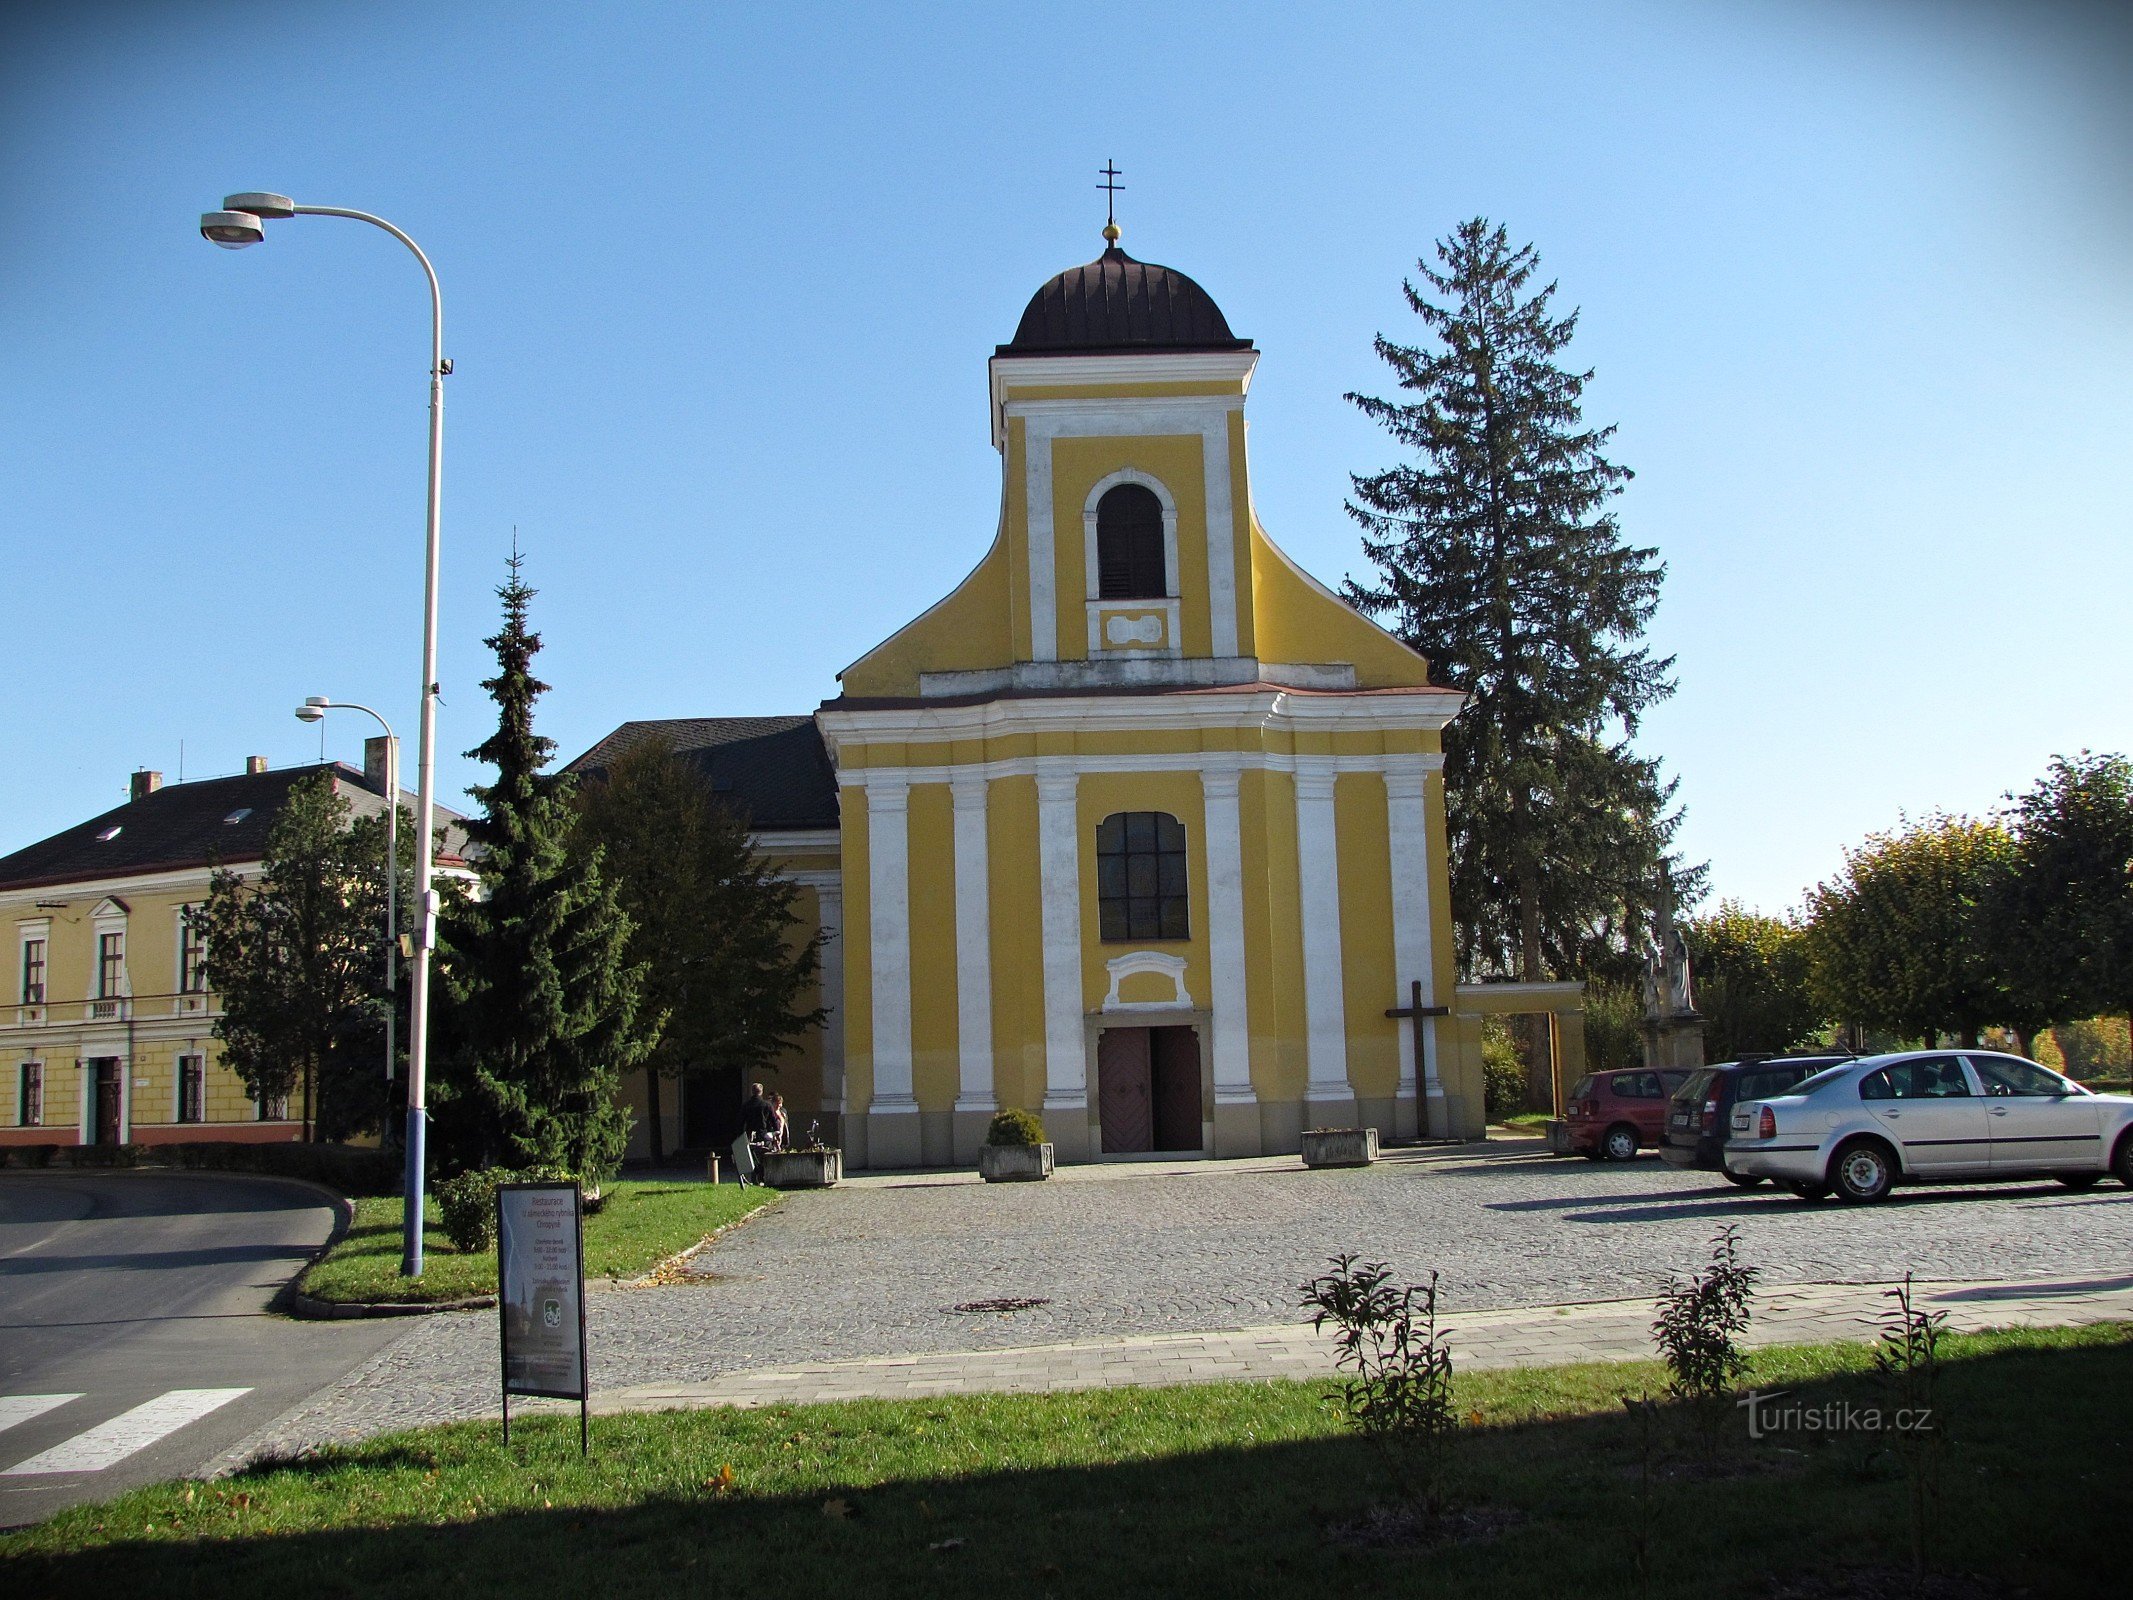 Chropyně - église Saint-Giljí